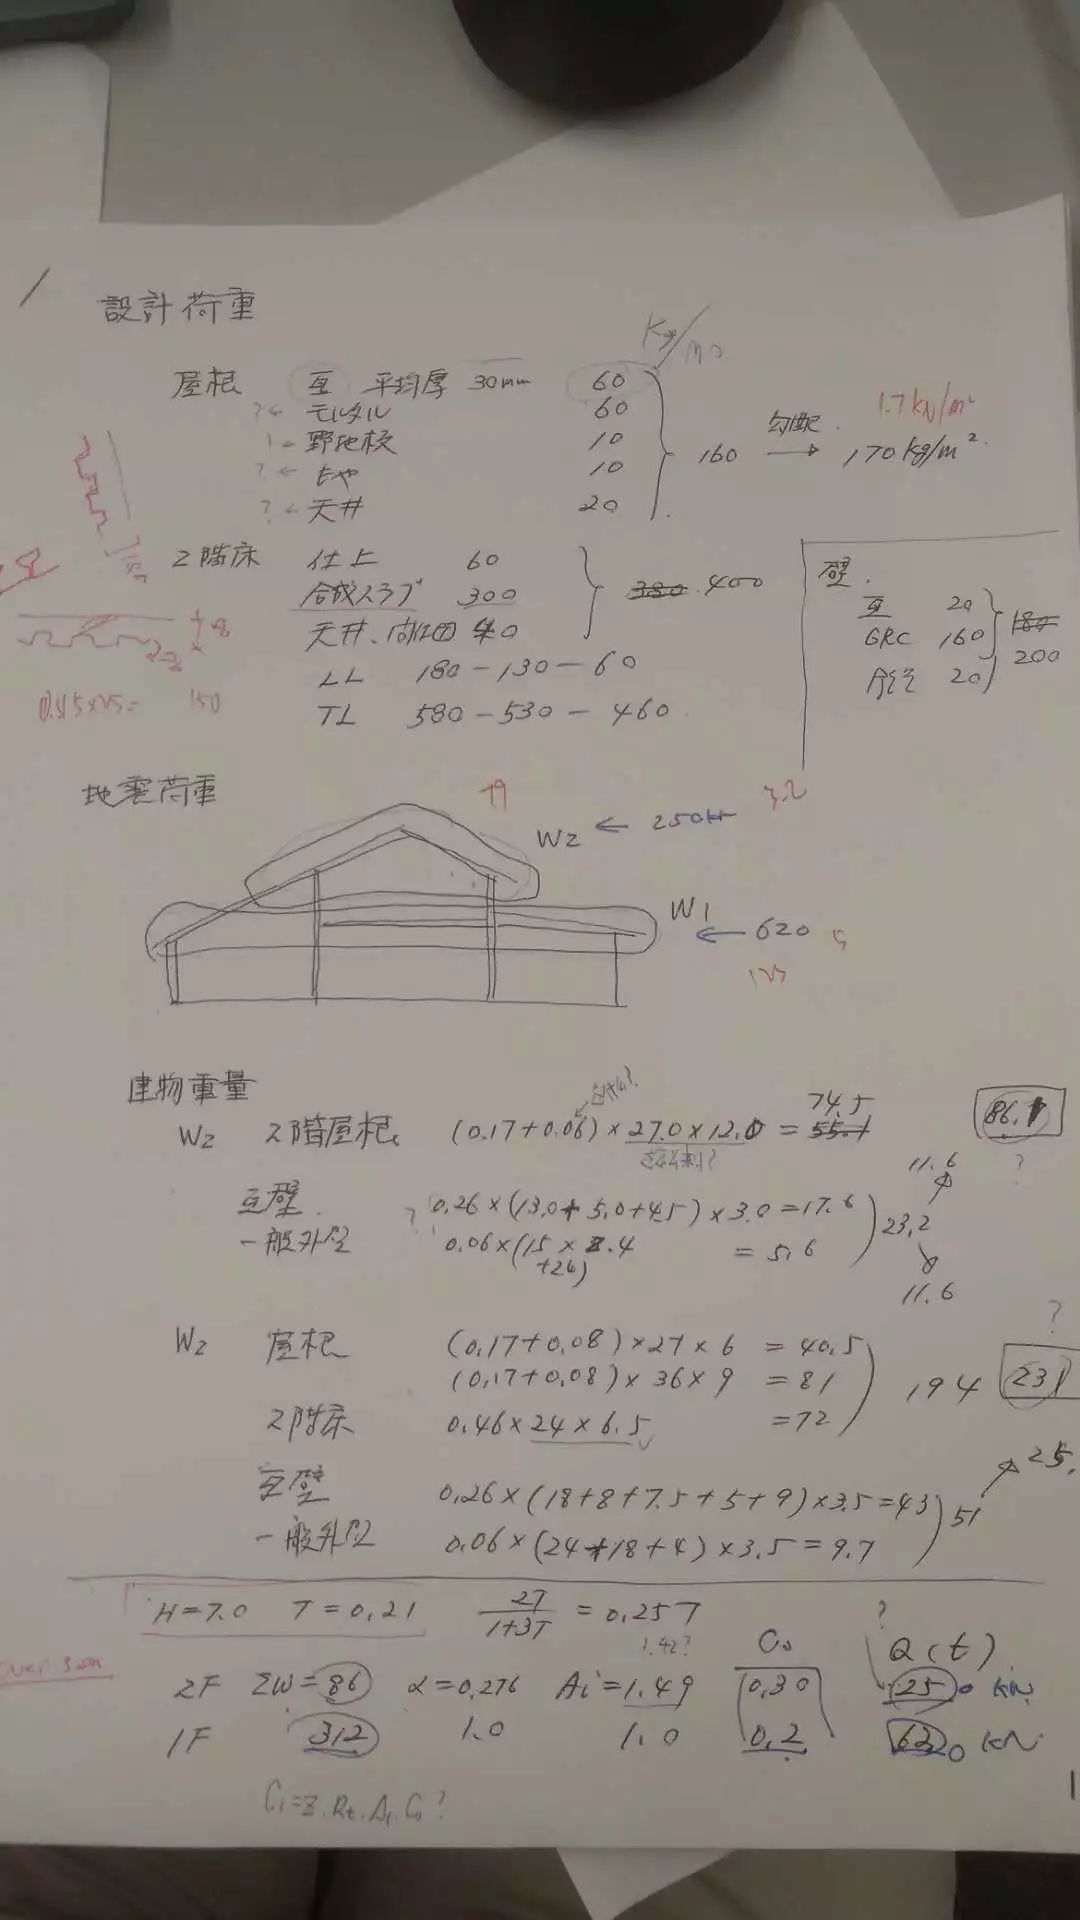 【行业资讯】海那边的结构工程师——日本考察拾遗